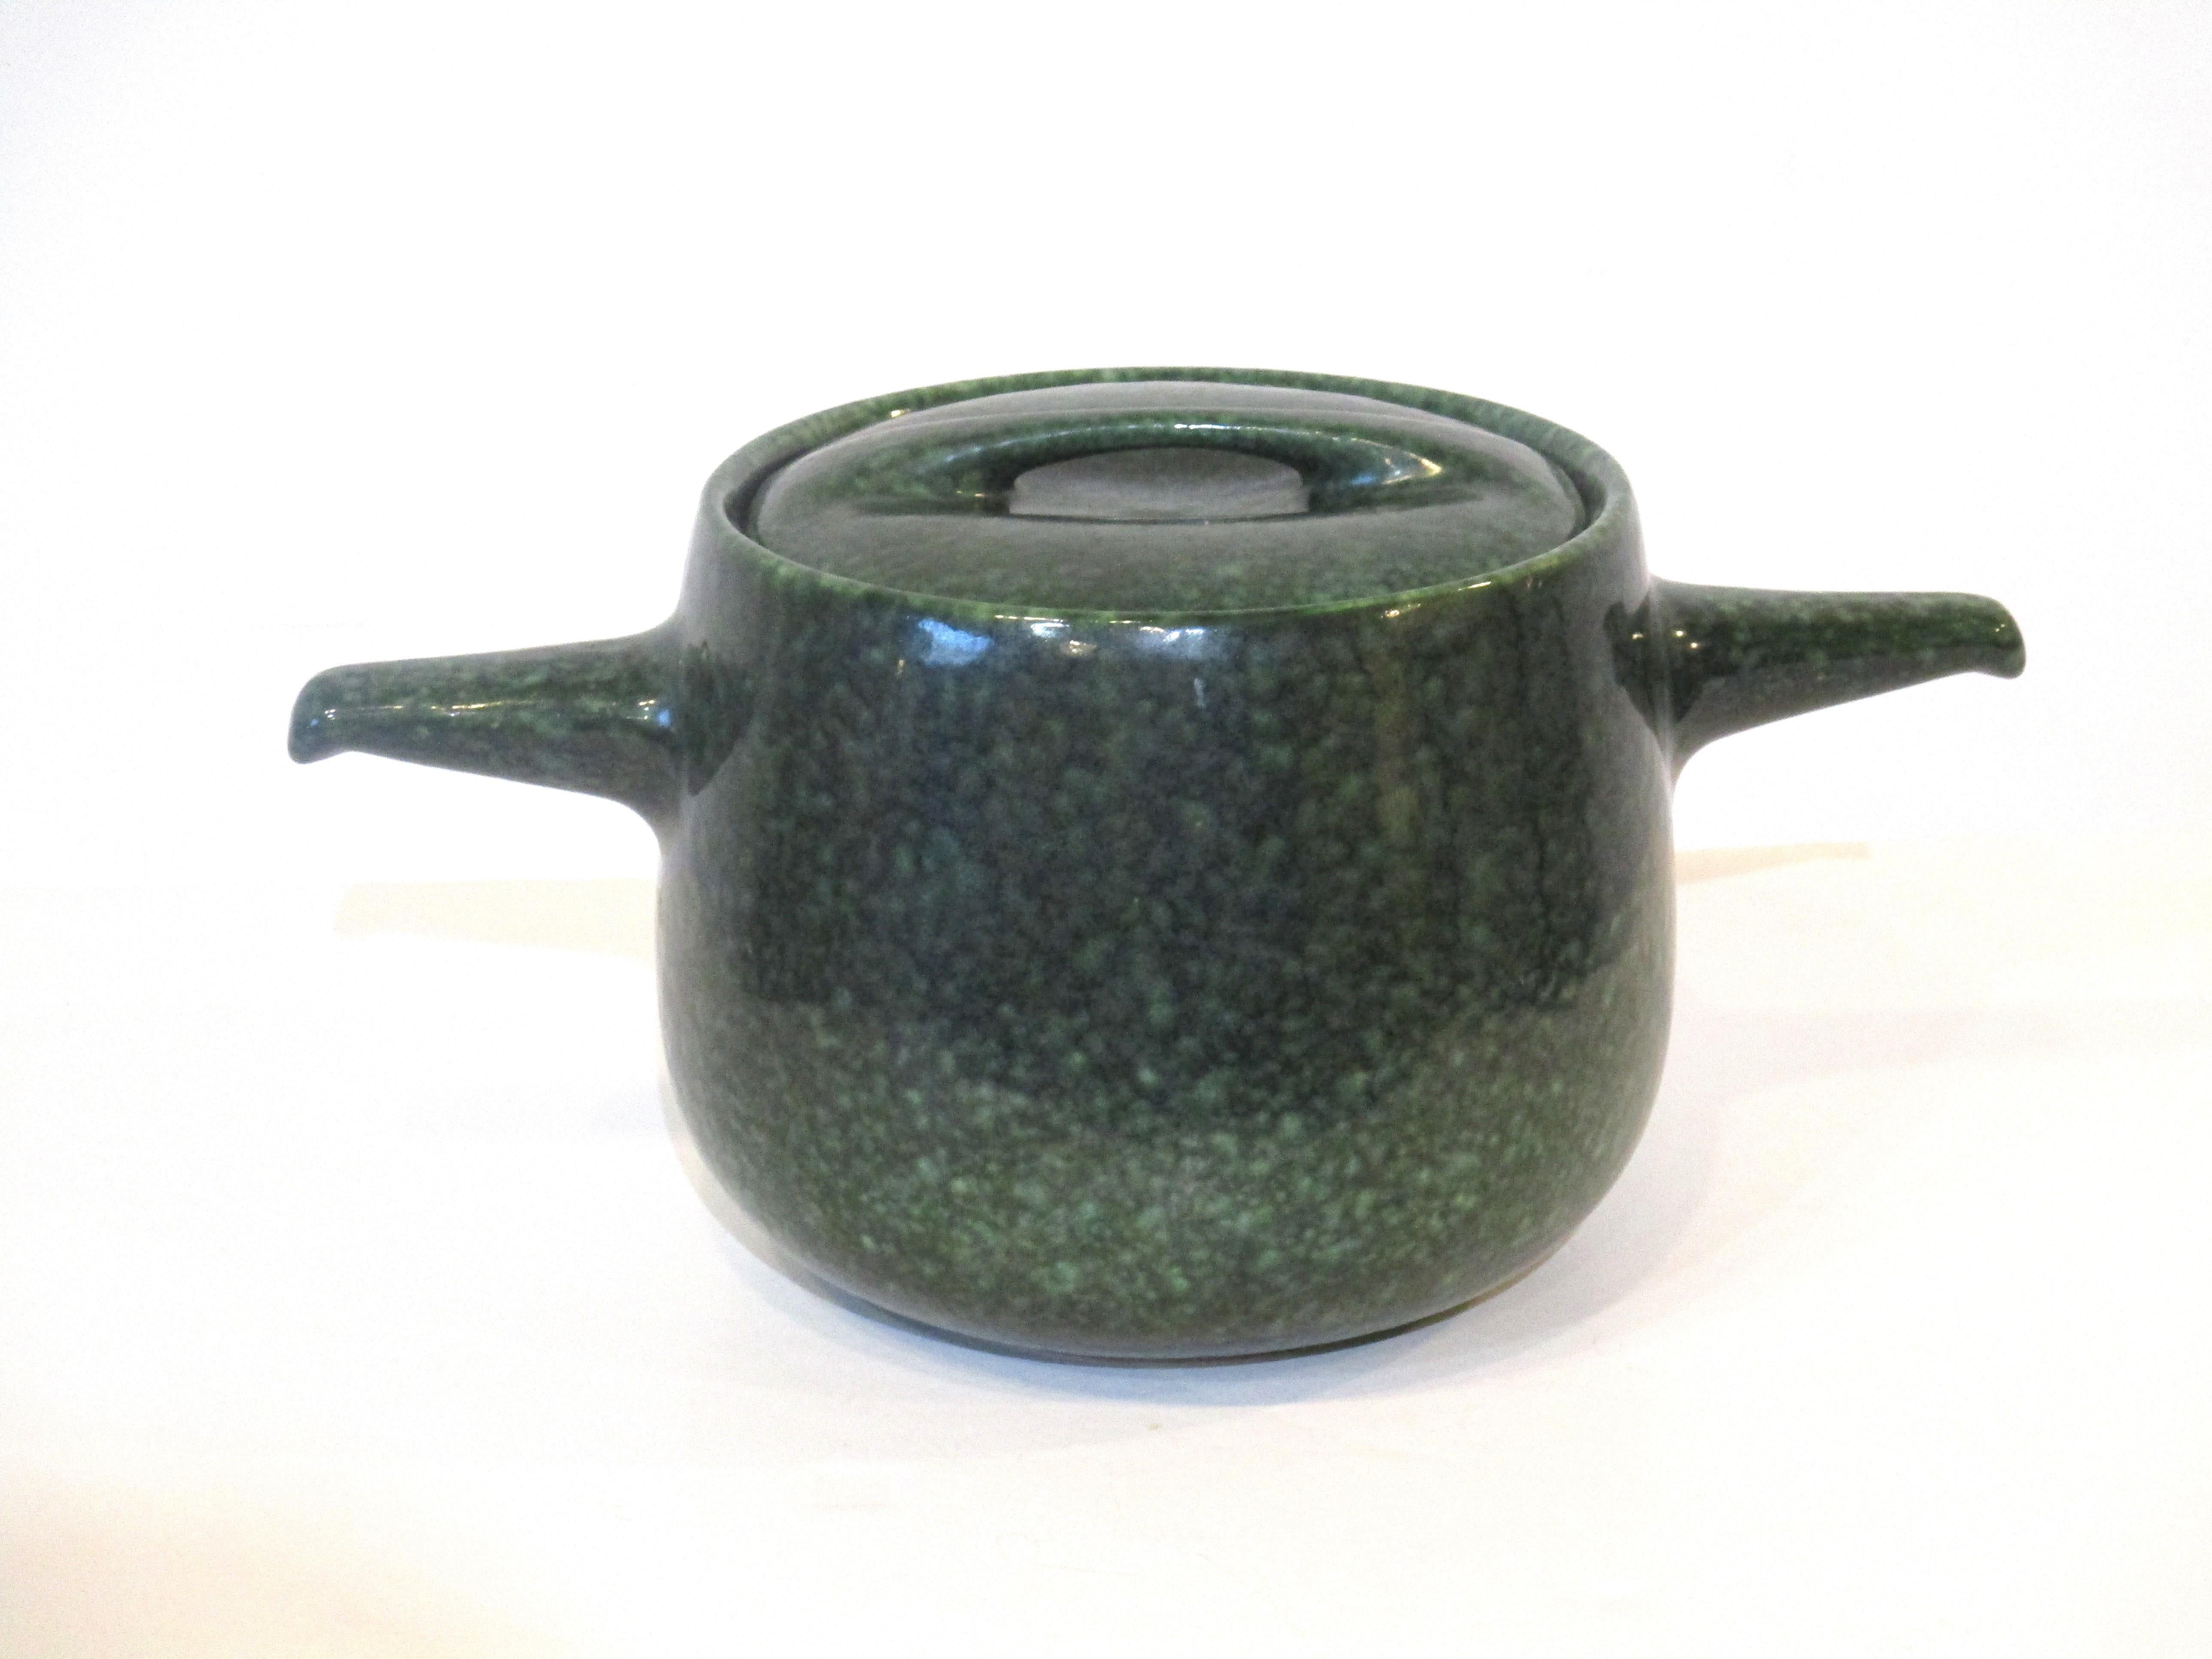 Eine sehr stilvolle Suppen- oder Servierschüssel aus Keramik in einer gepunkteten grünen Glasur, genannt Froschhaut, hergestellt von der Firma Roseville Pottery, entworfen von Raymor. Ein schwer zu findendes Stück, das den originalen skulpturalen